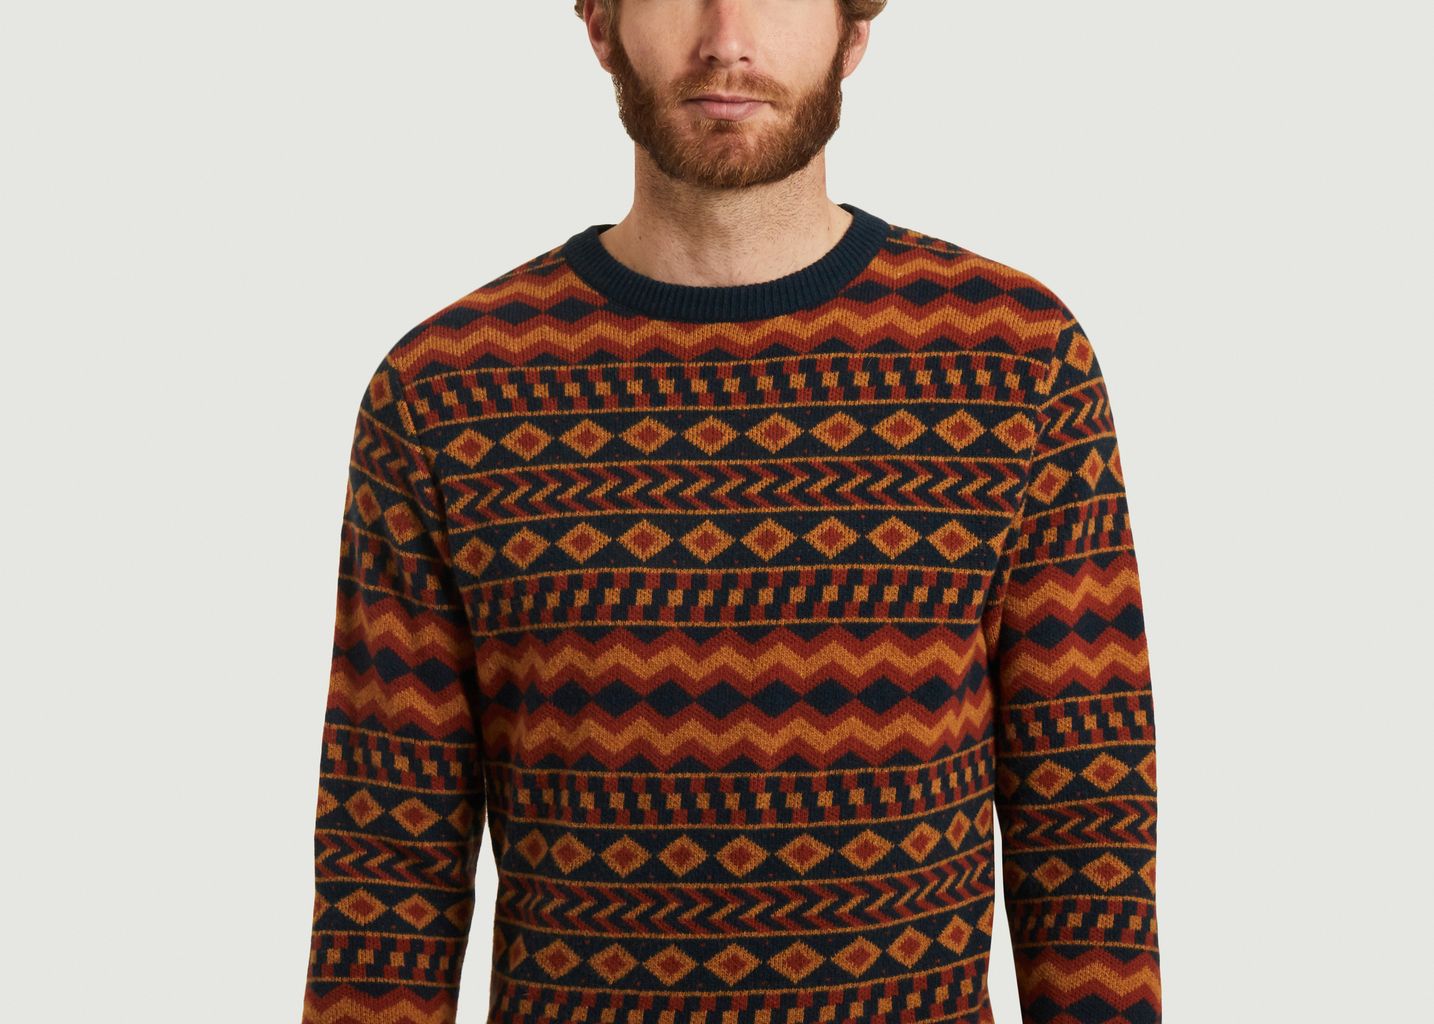 Jojo jacquard sweater - Olow